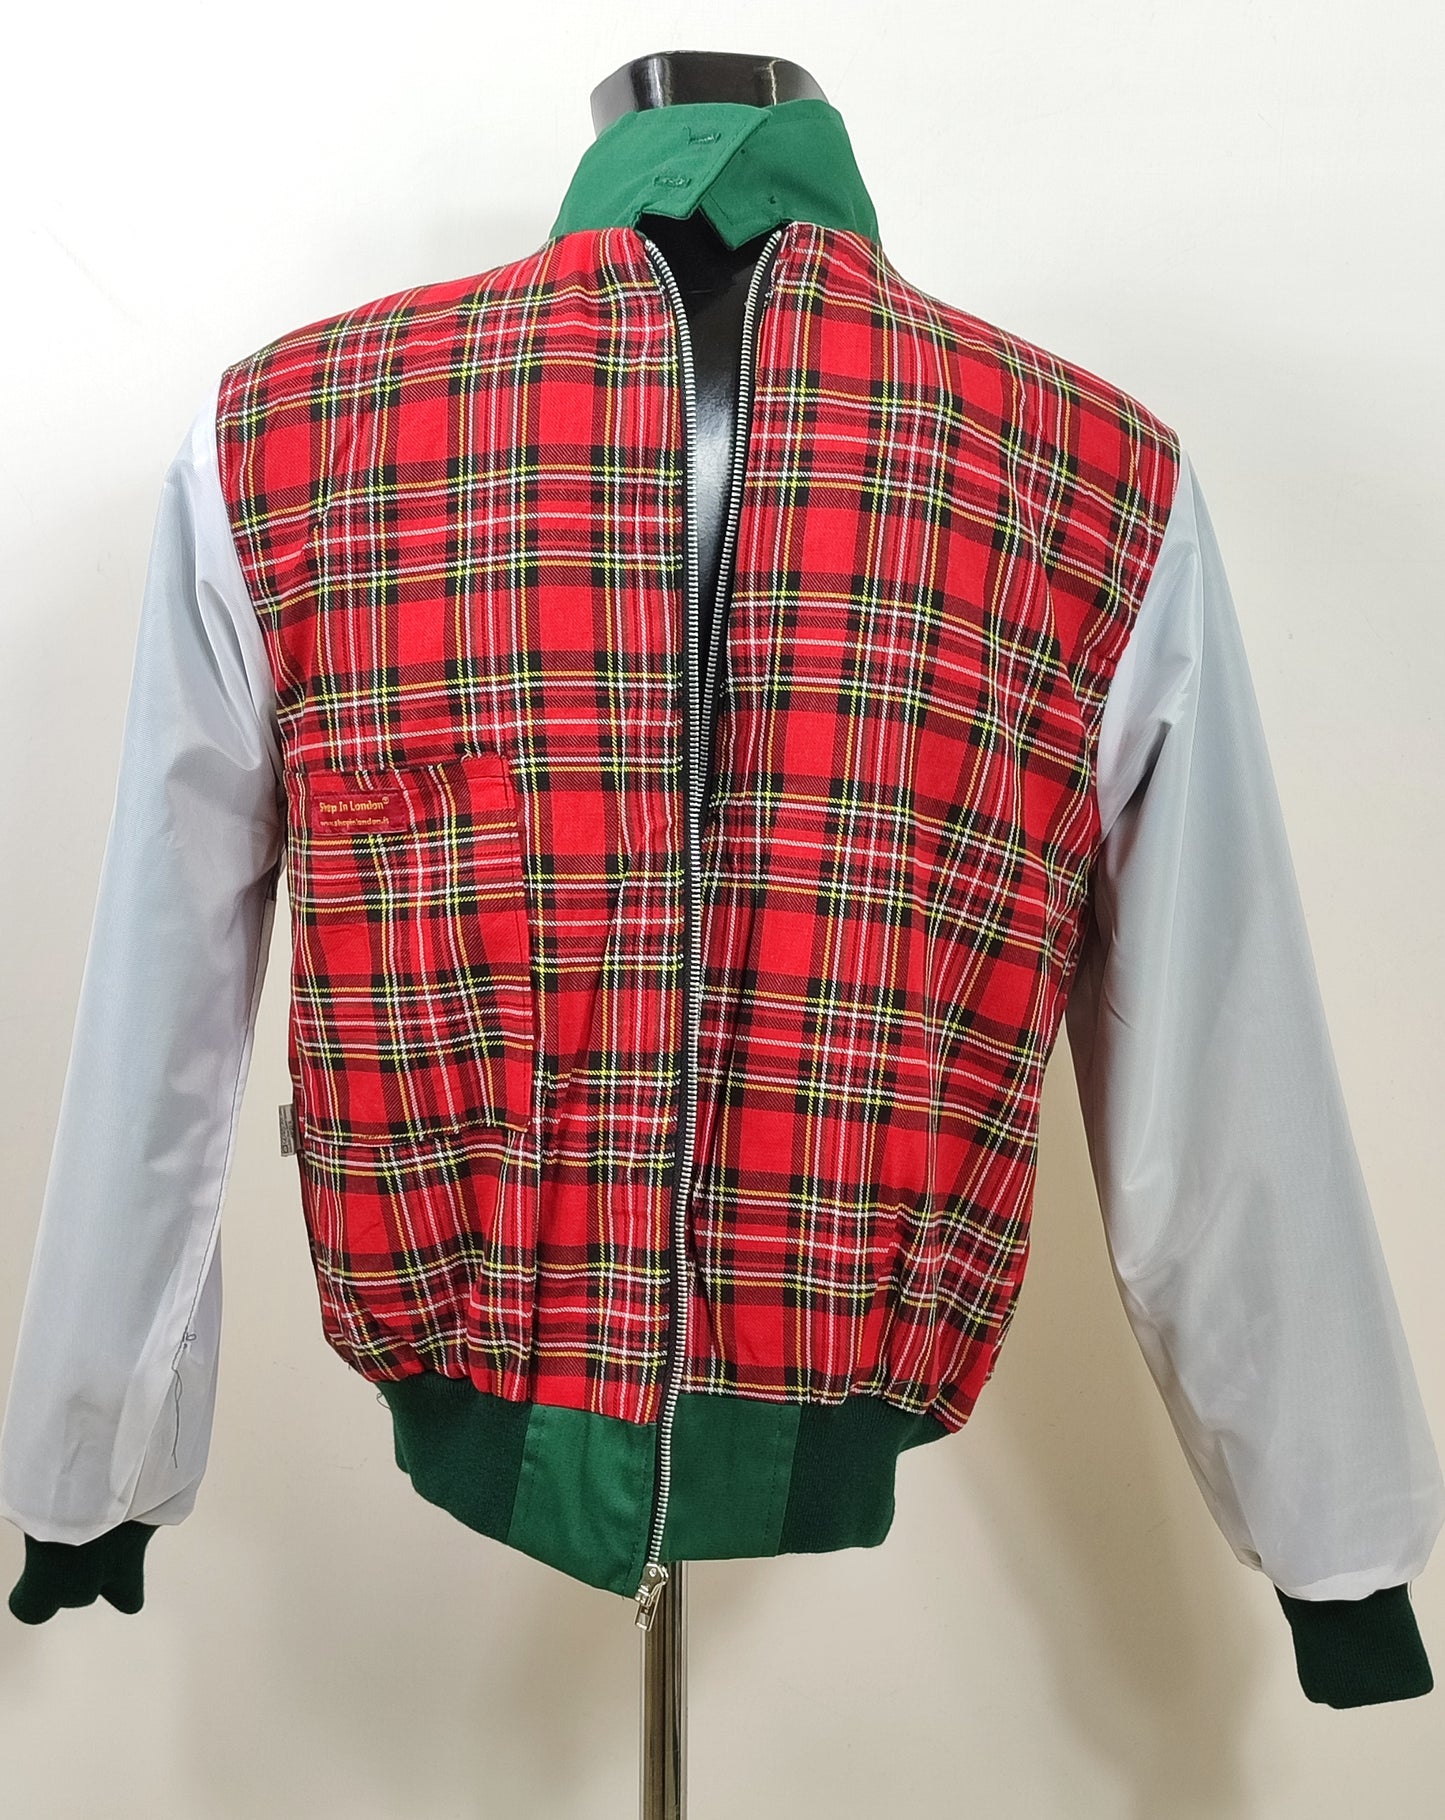 Giacca Harrington verde da uomo in cotone  Made in England - Man Green Harrington Jacket